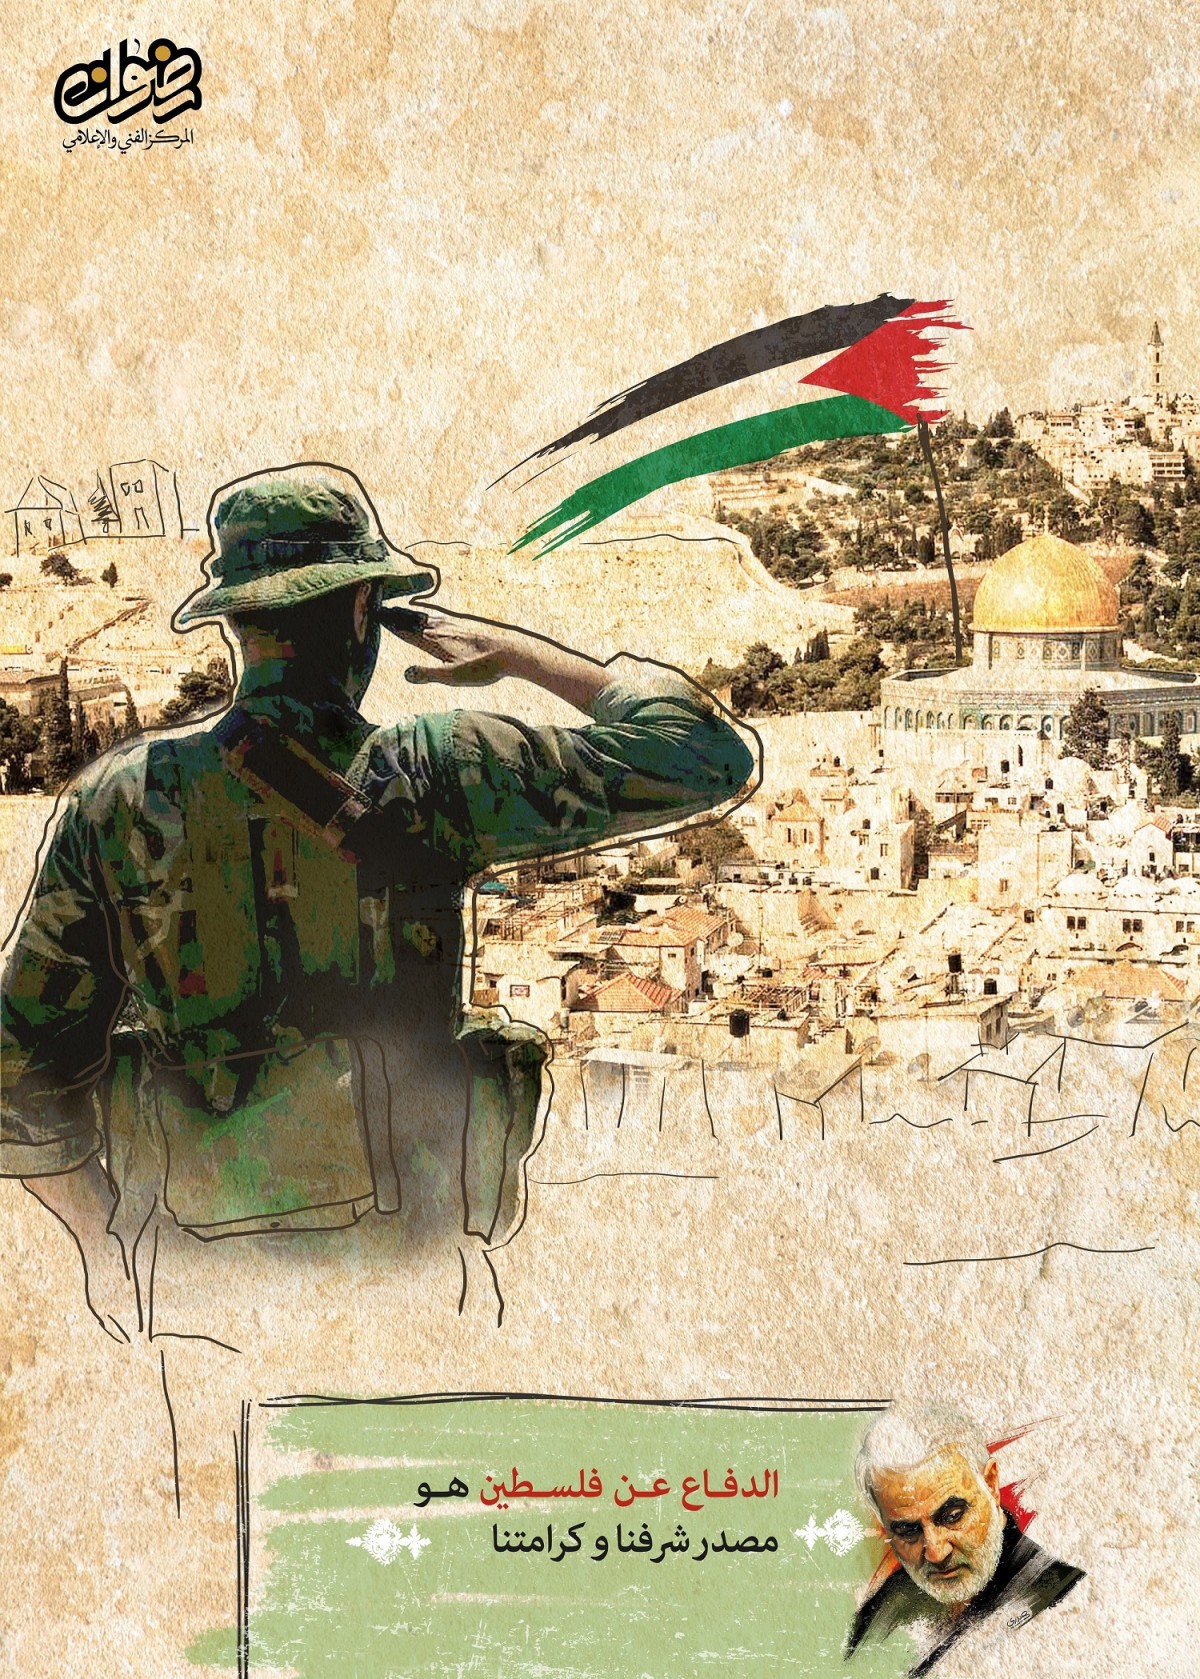 الدفاع عن الفلسطين هو مصدر شرفنا و كرامتنا